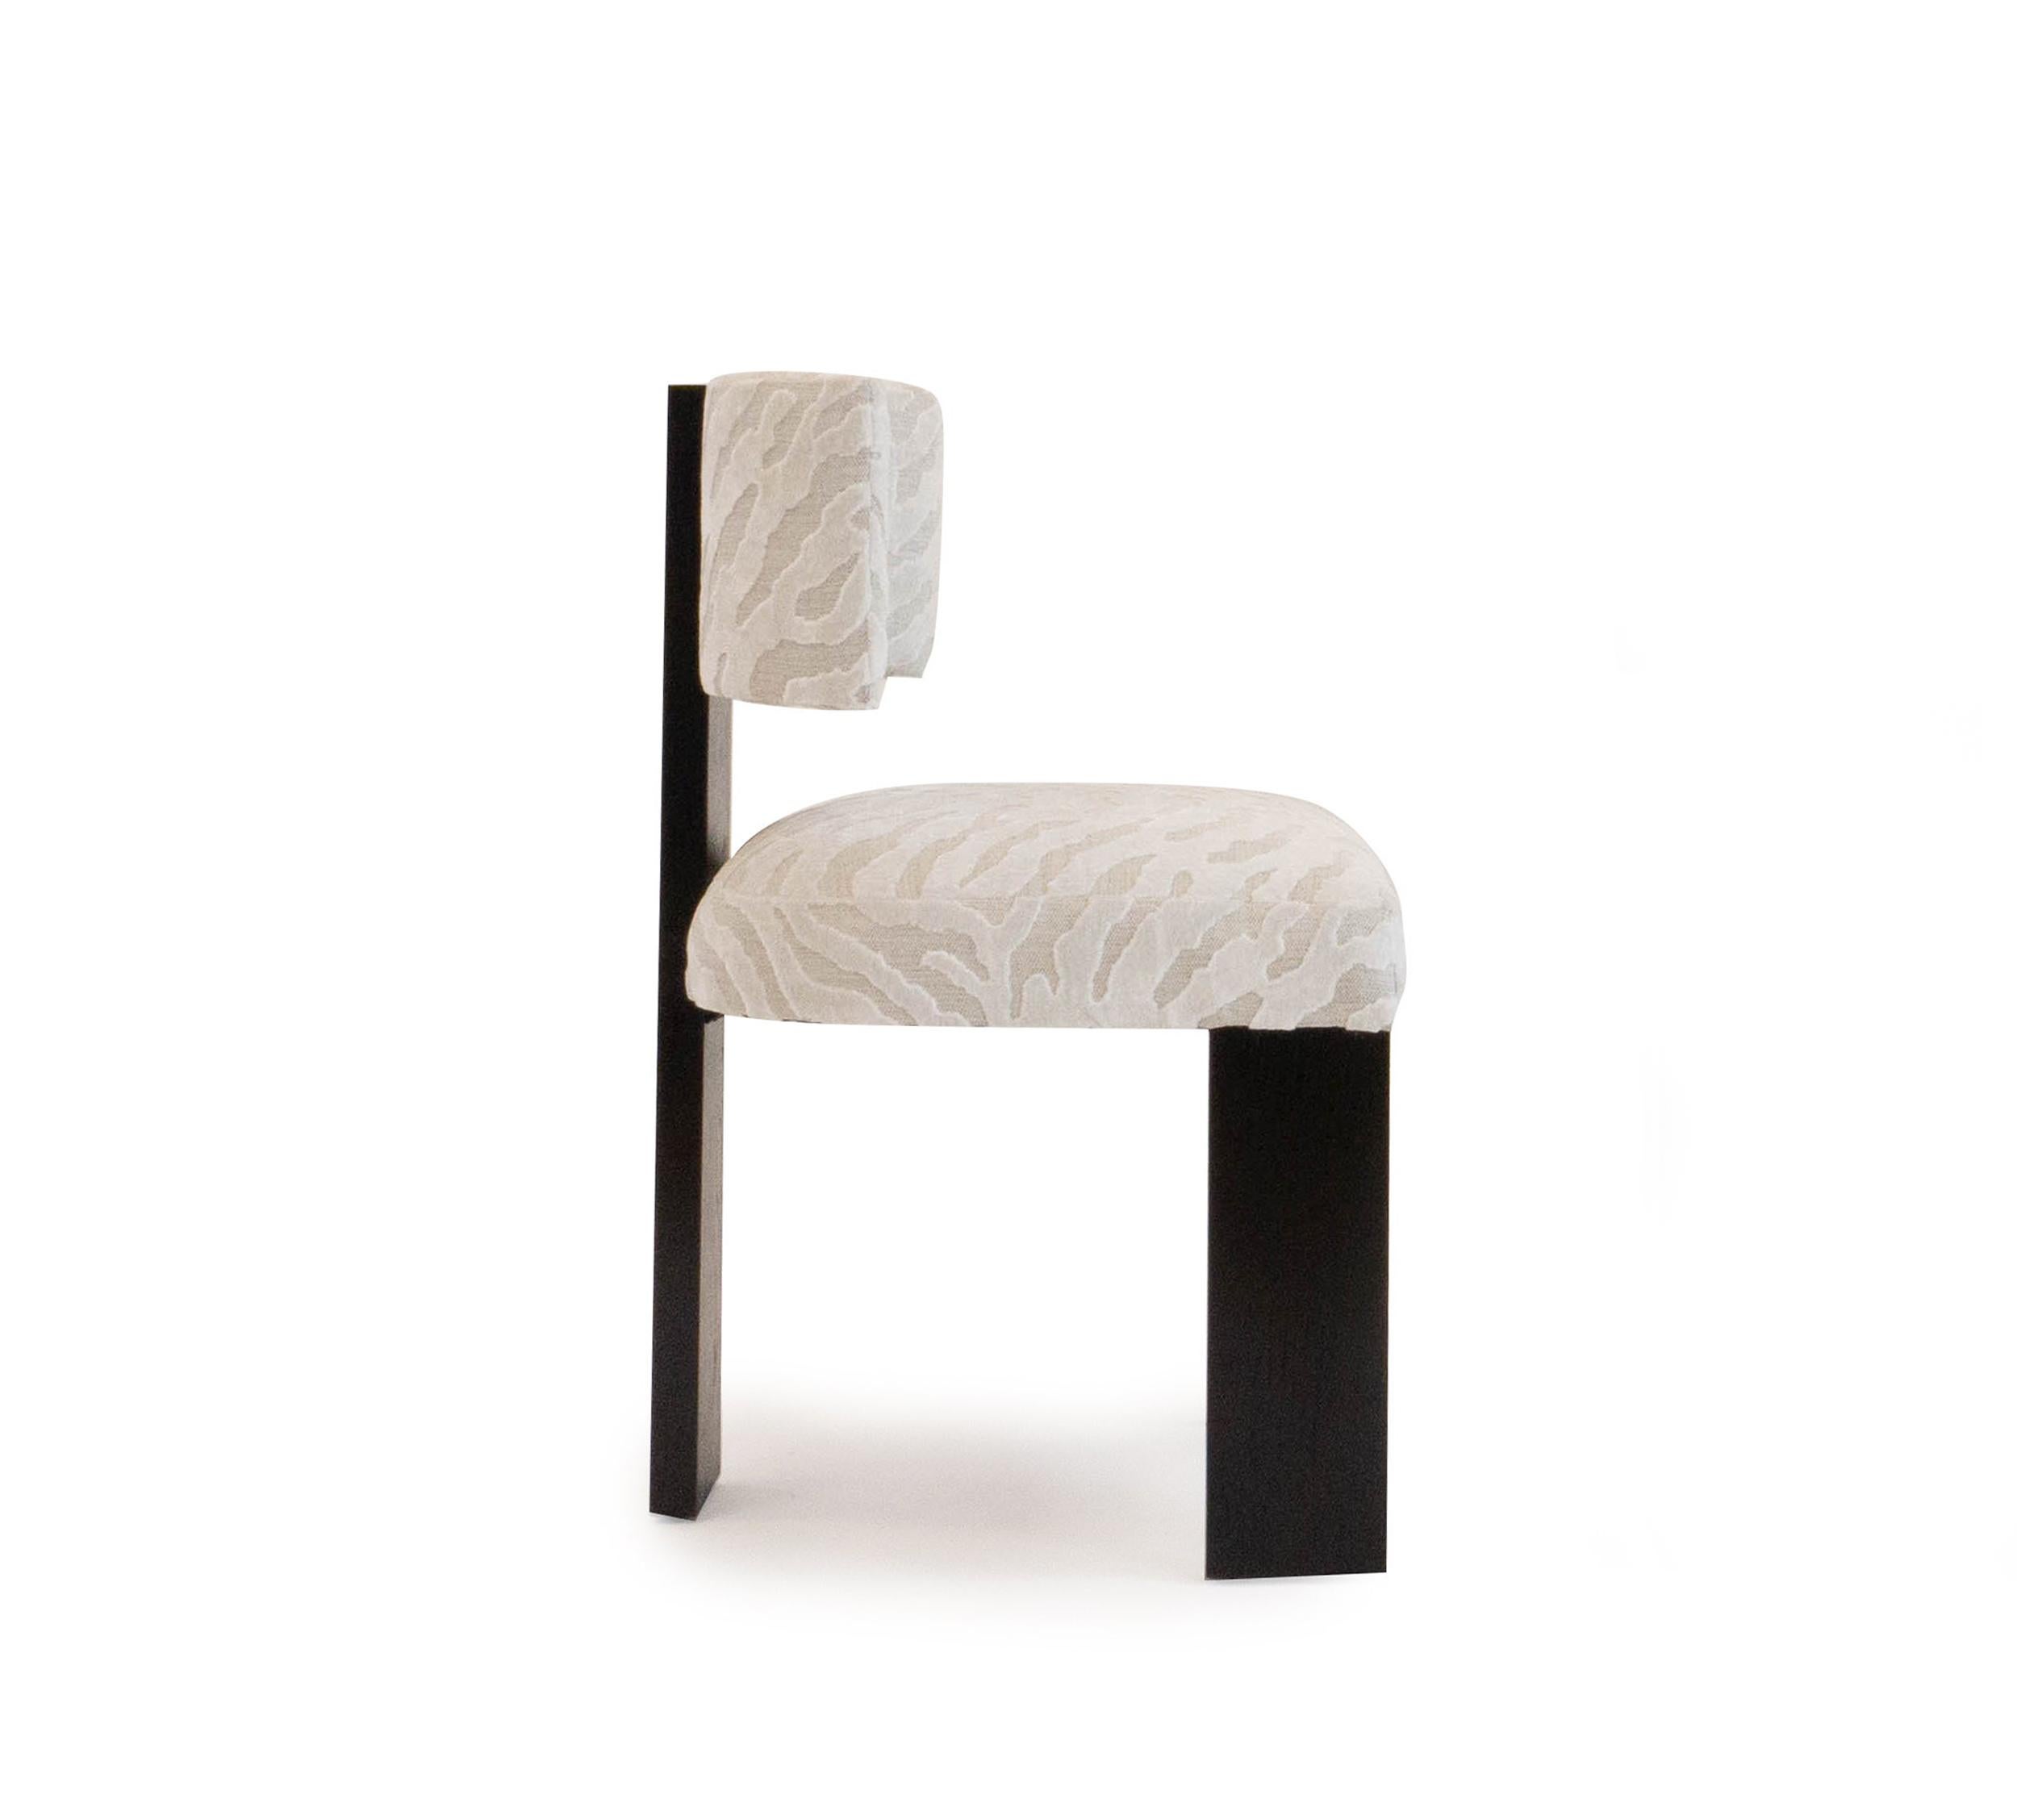 Notre chaise de salle à manger Marangoni est une confortable chaise de salle à manger moderne avec un cadre en chêne blanc, finition ébène, présentée dans un velours coupé Romo. Personnalisable sur demande. Fabriqué dans notre atelier du